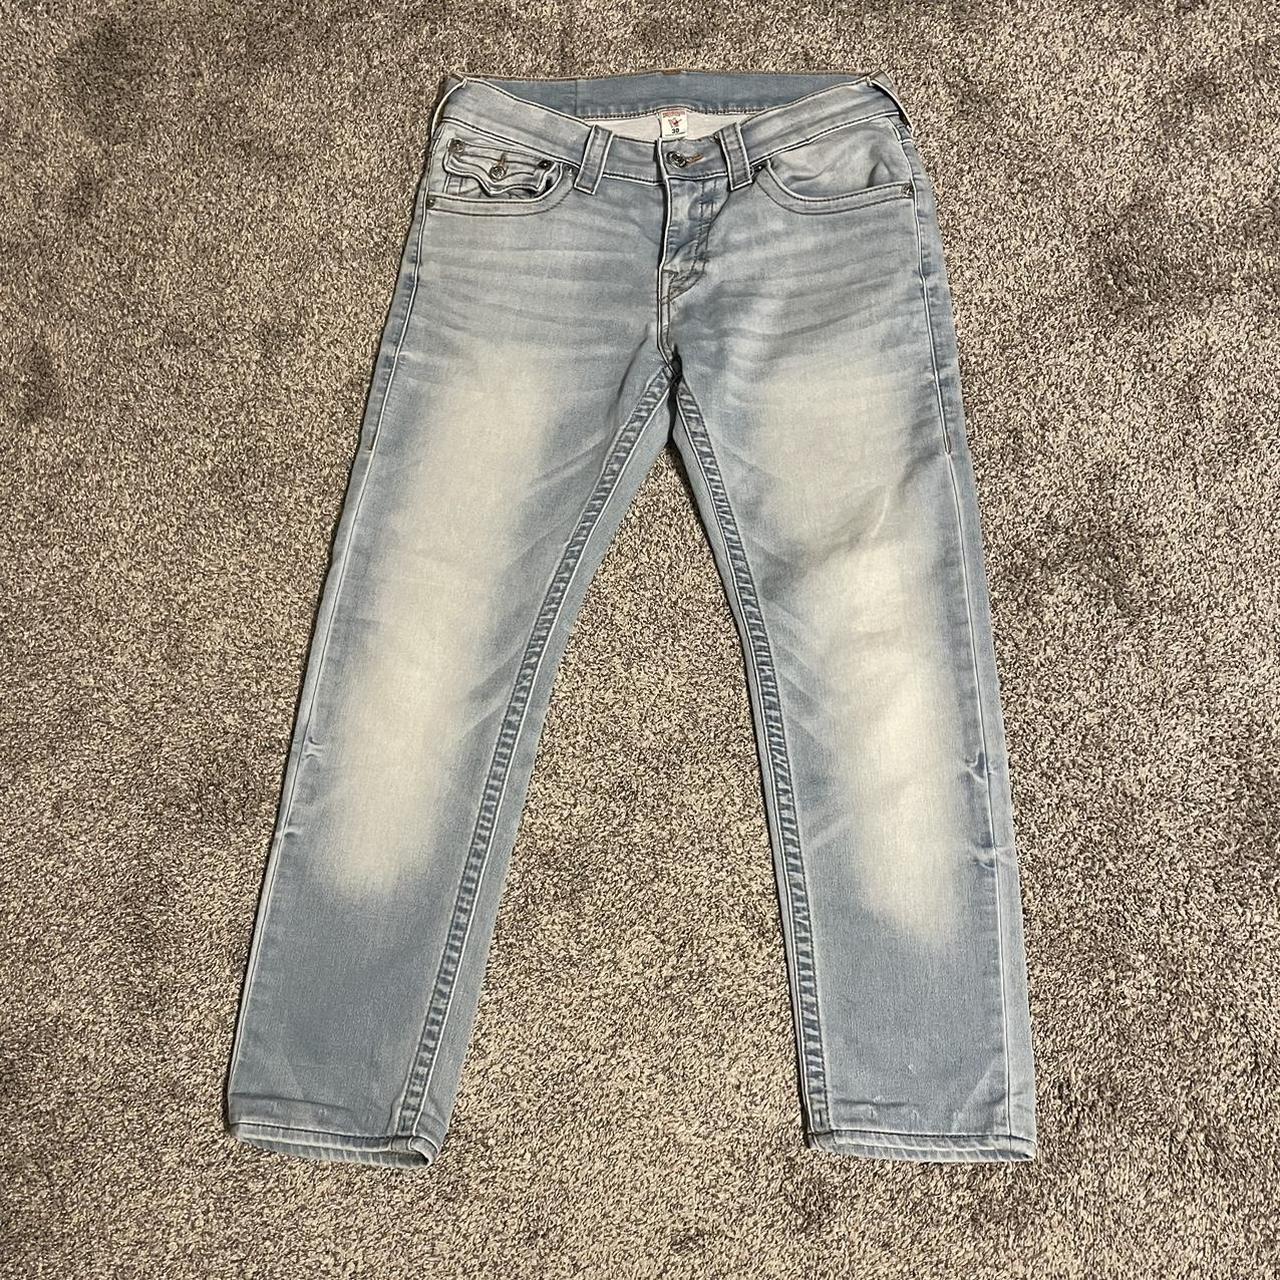 True Religion Skinny Jeans Size 30 Flawless jeans,... - Depop